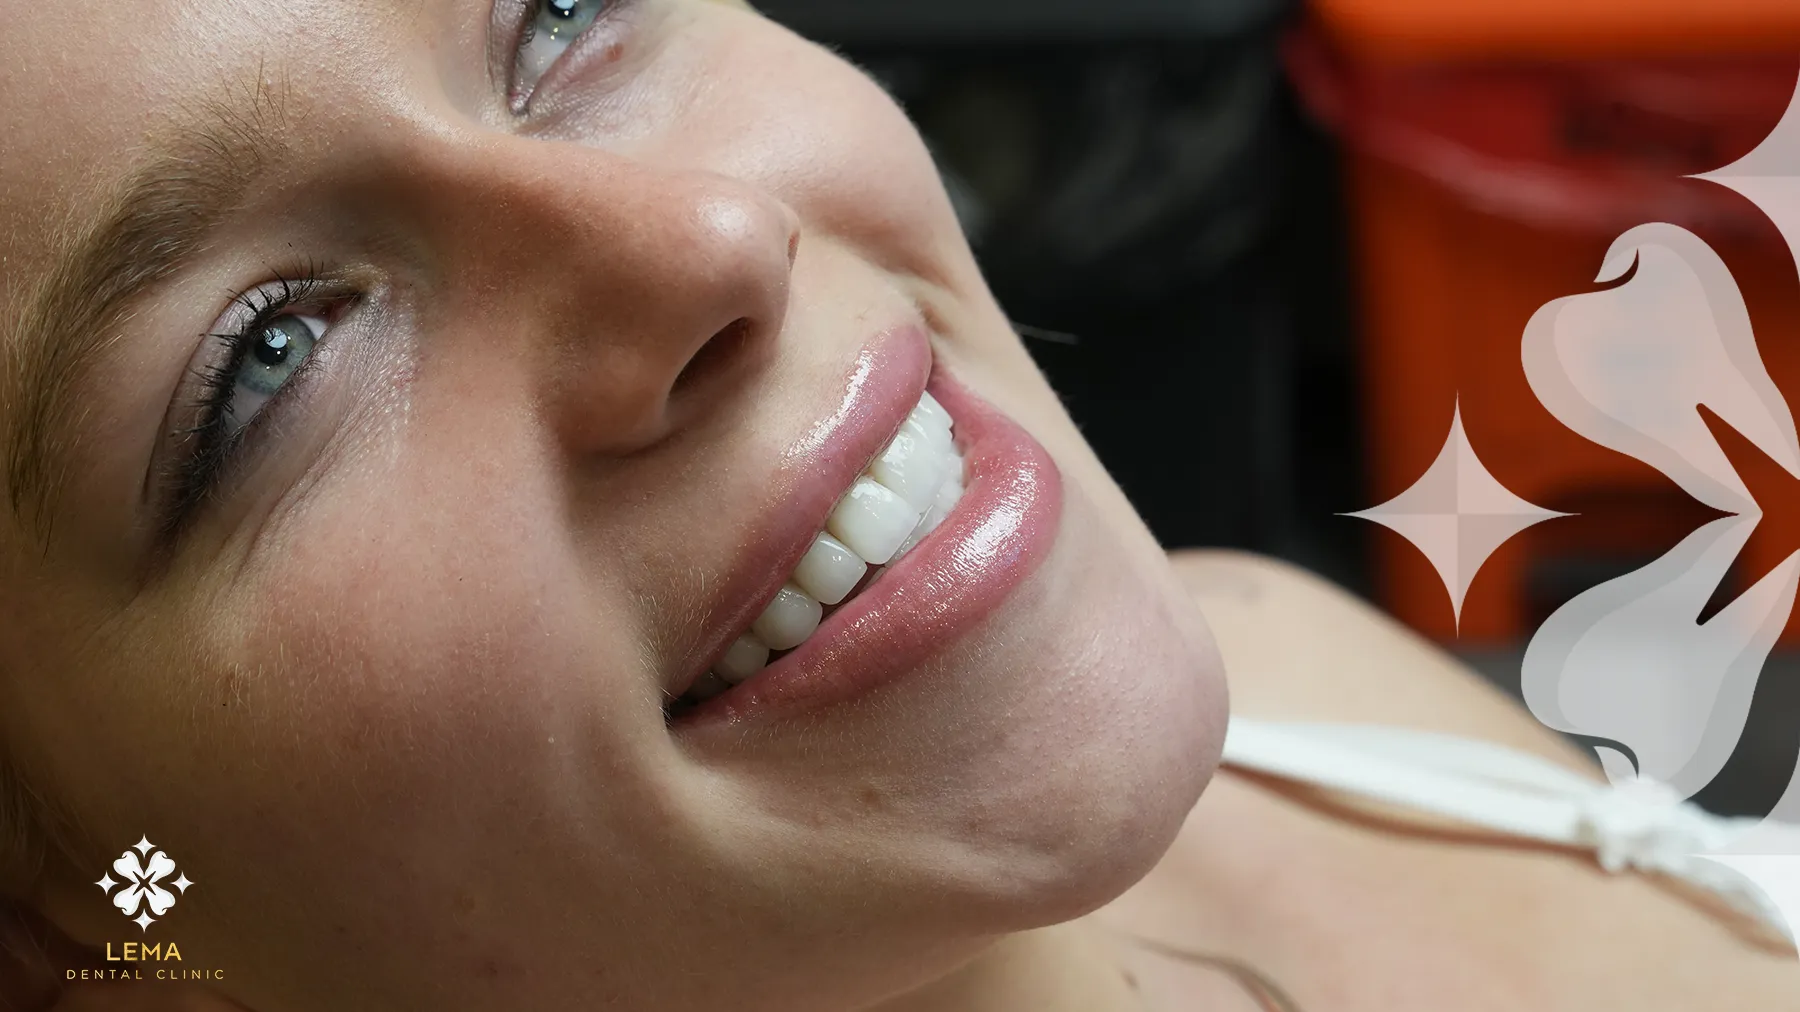 دليل الرعاية اللاحقة زرع الأسنان